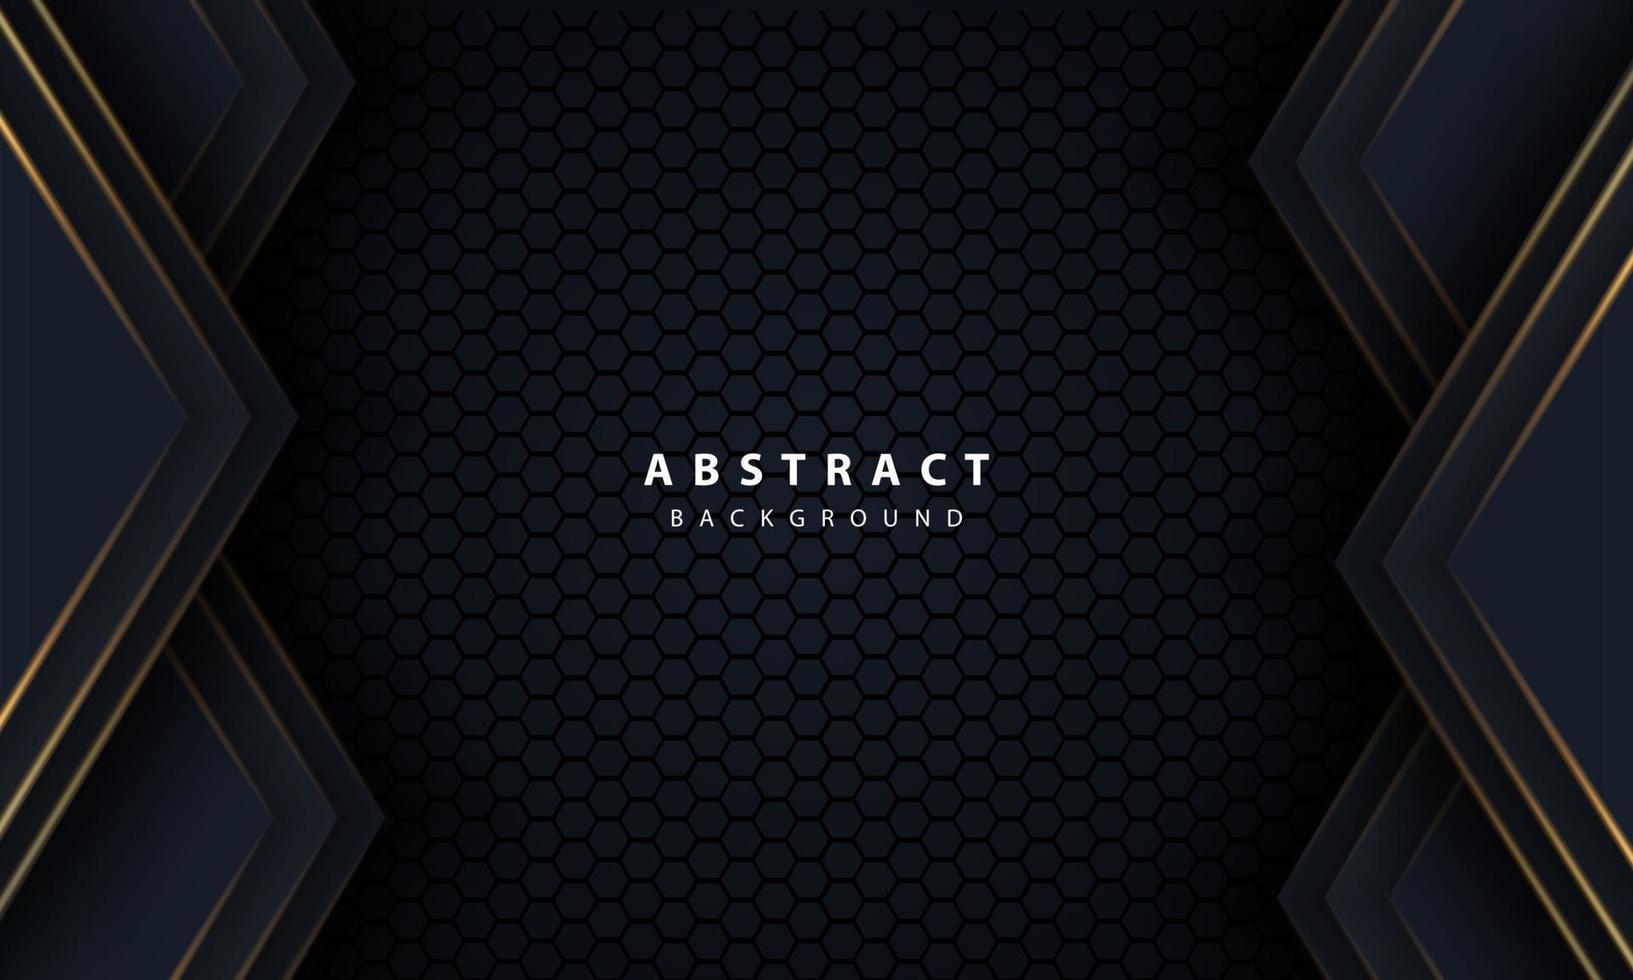 flèche de ligne or abstraite sur fond noir avec maille hexagonale design illustration vectorielle de luxe moderne technologie futuriste fond. vecteur